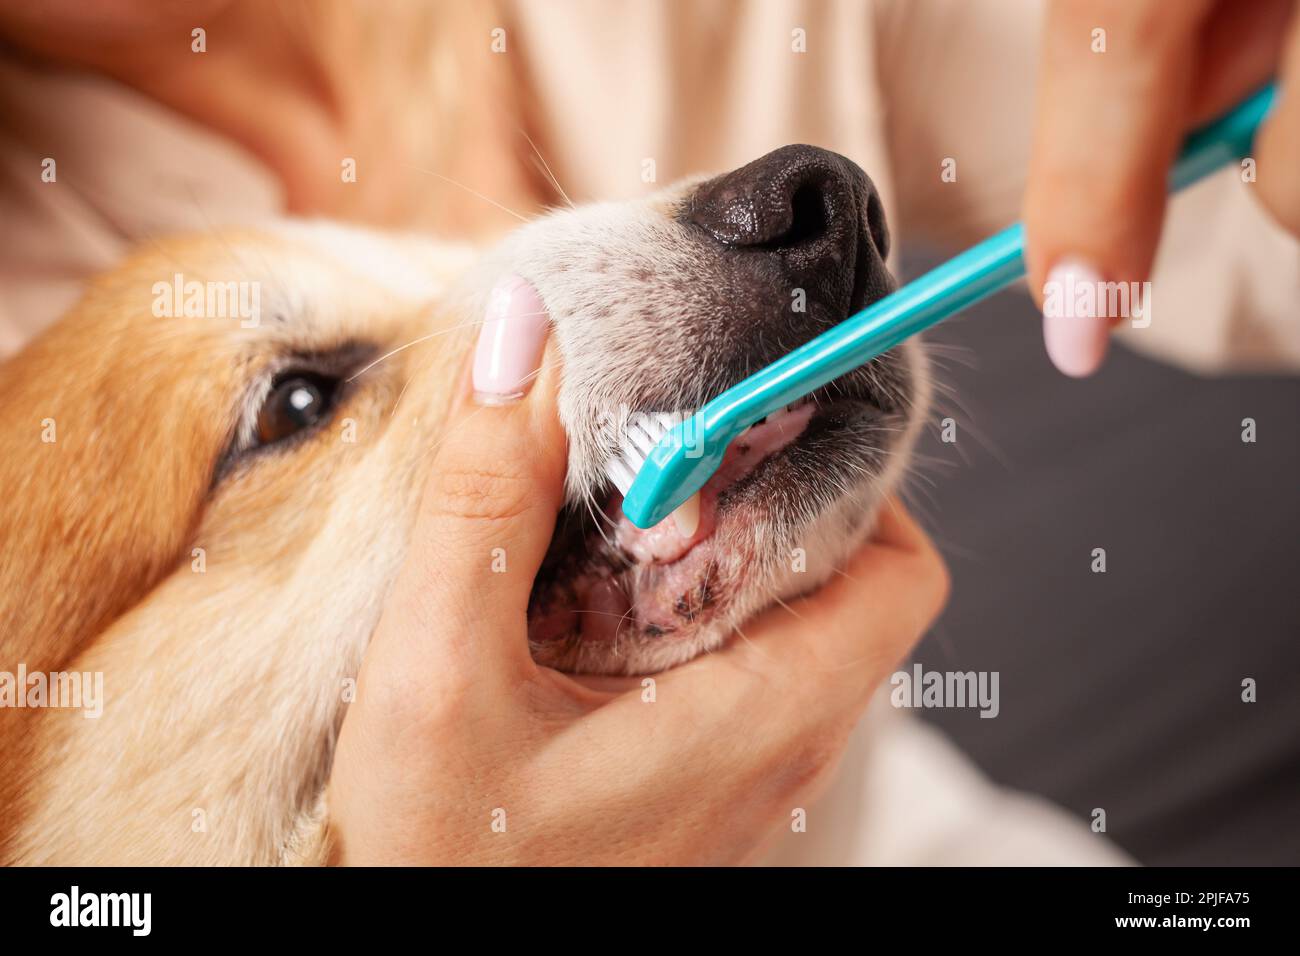 donna spazzolare i denti del cane con spazzolino da denti, prendersi cura della cavità orale, prendersi cura degli animali domestici, amore. Foto Stock